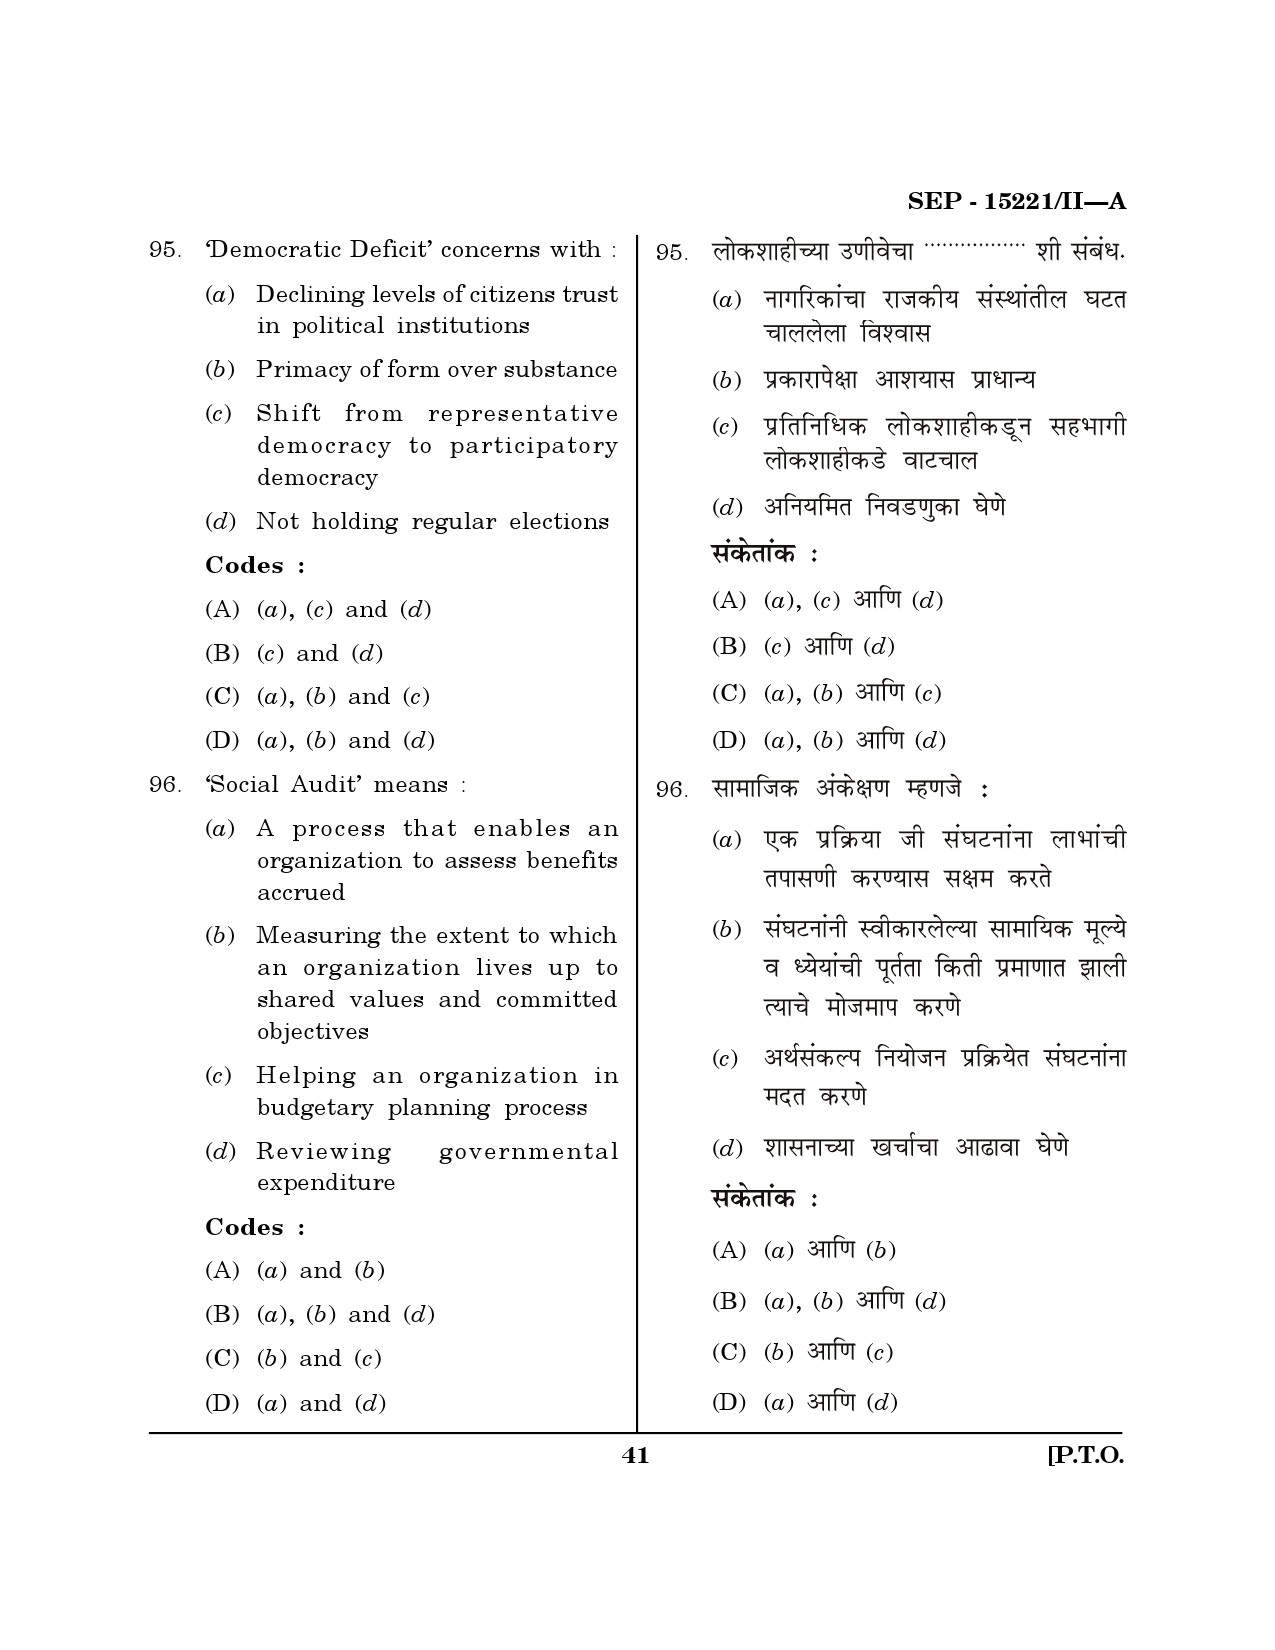 Maharashtra SET Political Science Exam Question Paper September 2021 40